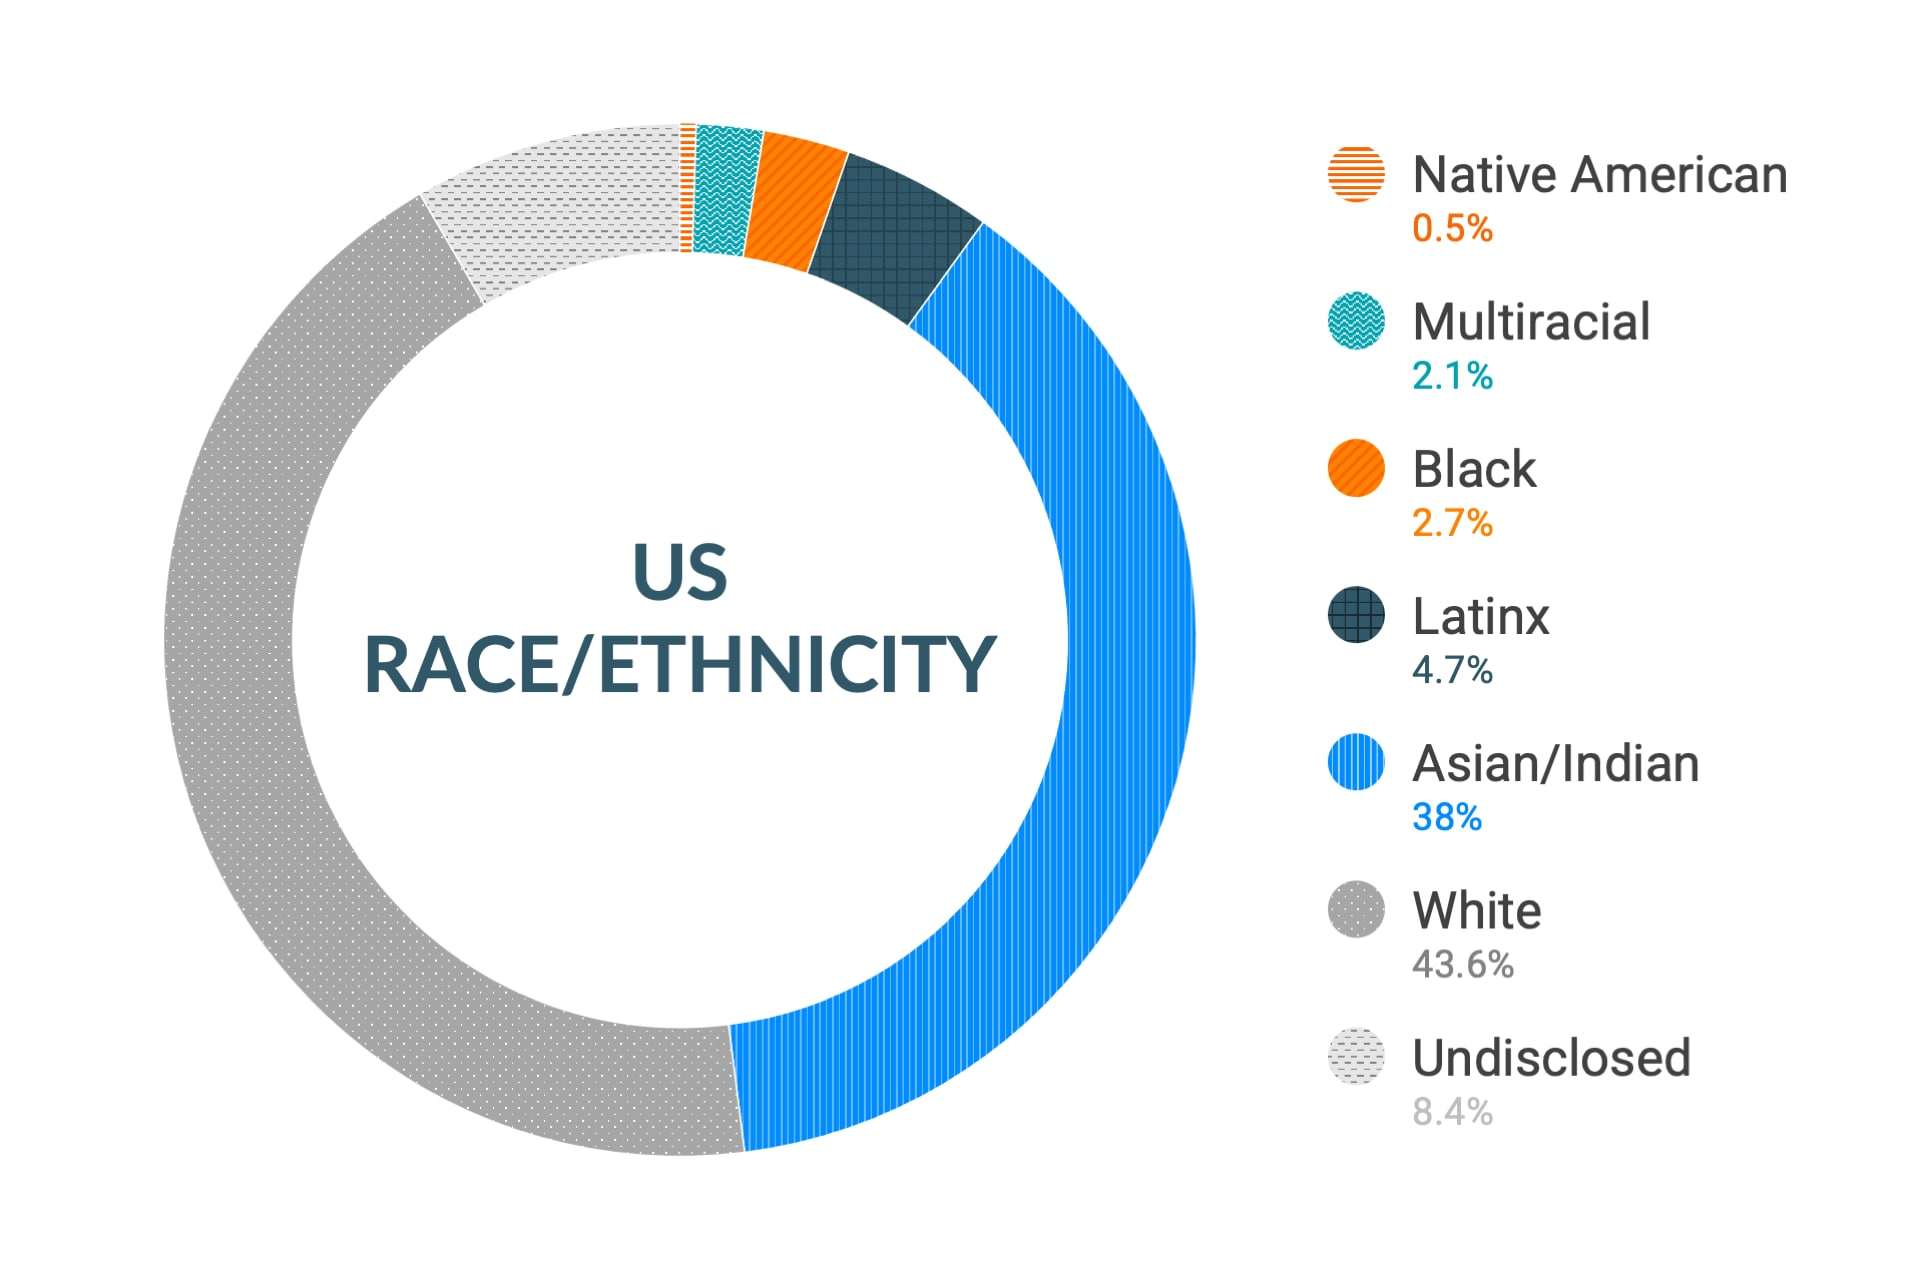 미국 지역 인종 및 민족에 대한 Cloudera의 다양성 및 포용력 데이터: 아메리카 원주민 0.5%, 다인종 2.3%, 흑인 2.8%, 라틴계 4.9%, 아시아인 및 인도인 36.4%, 백인 44.6%, 비공개 8.5%